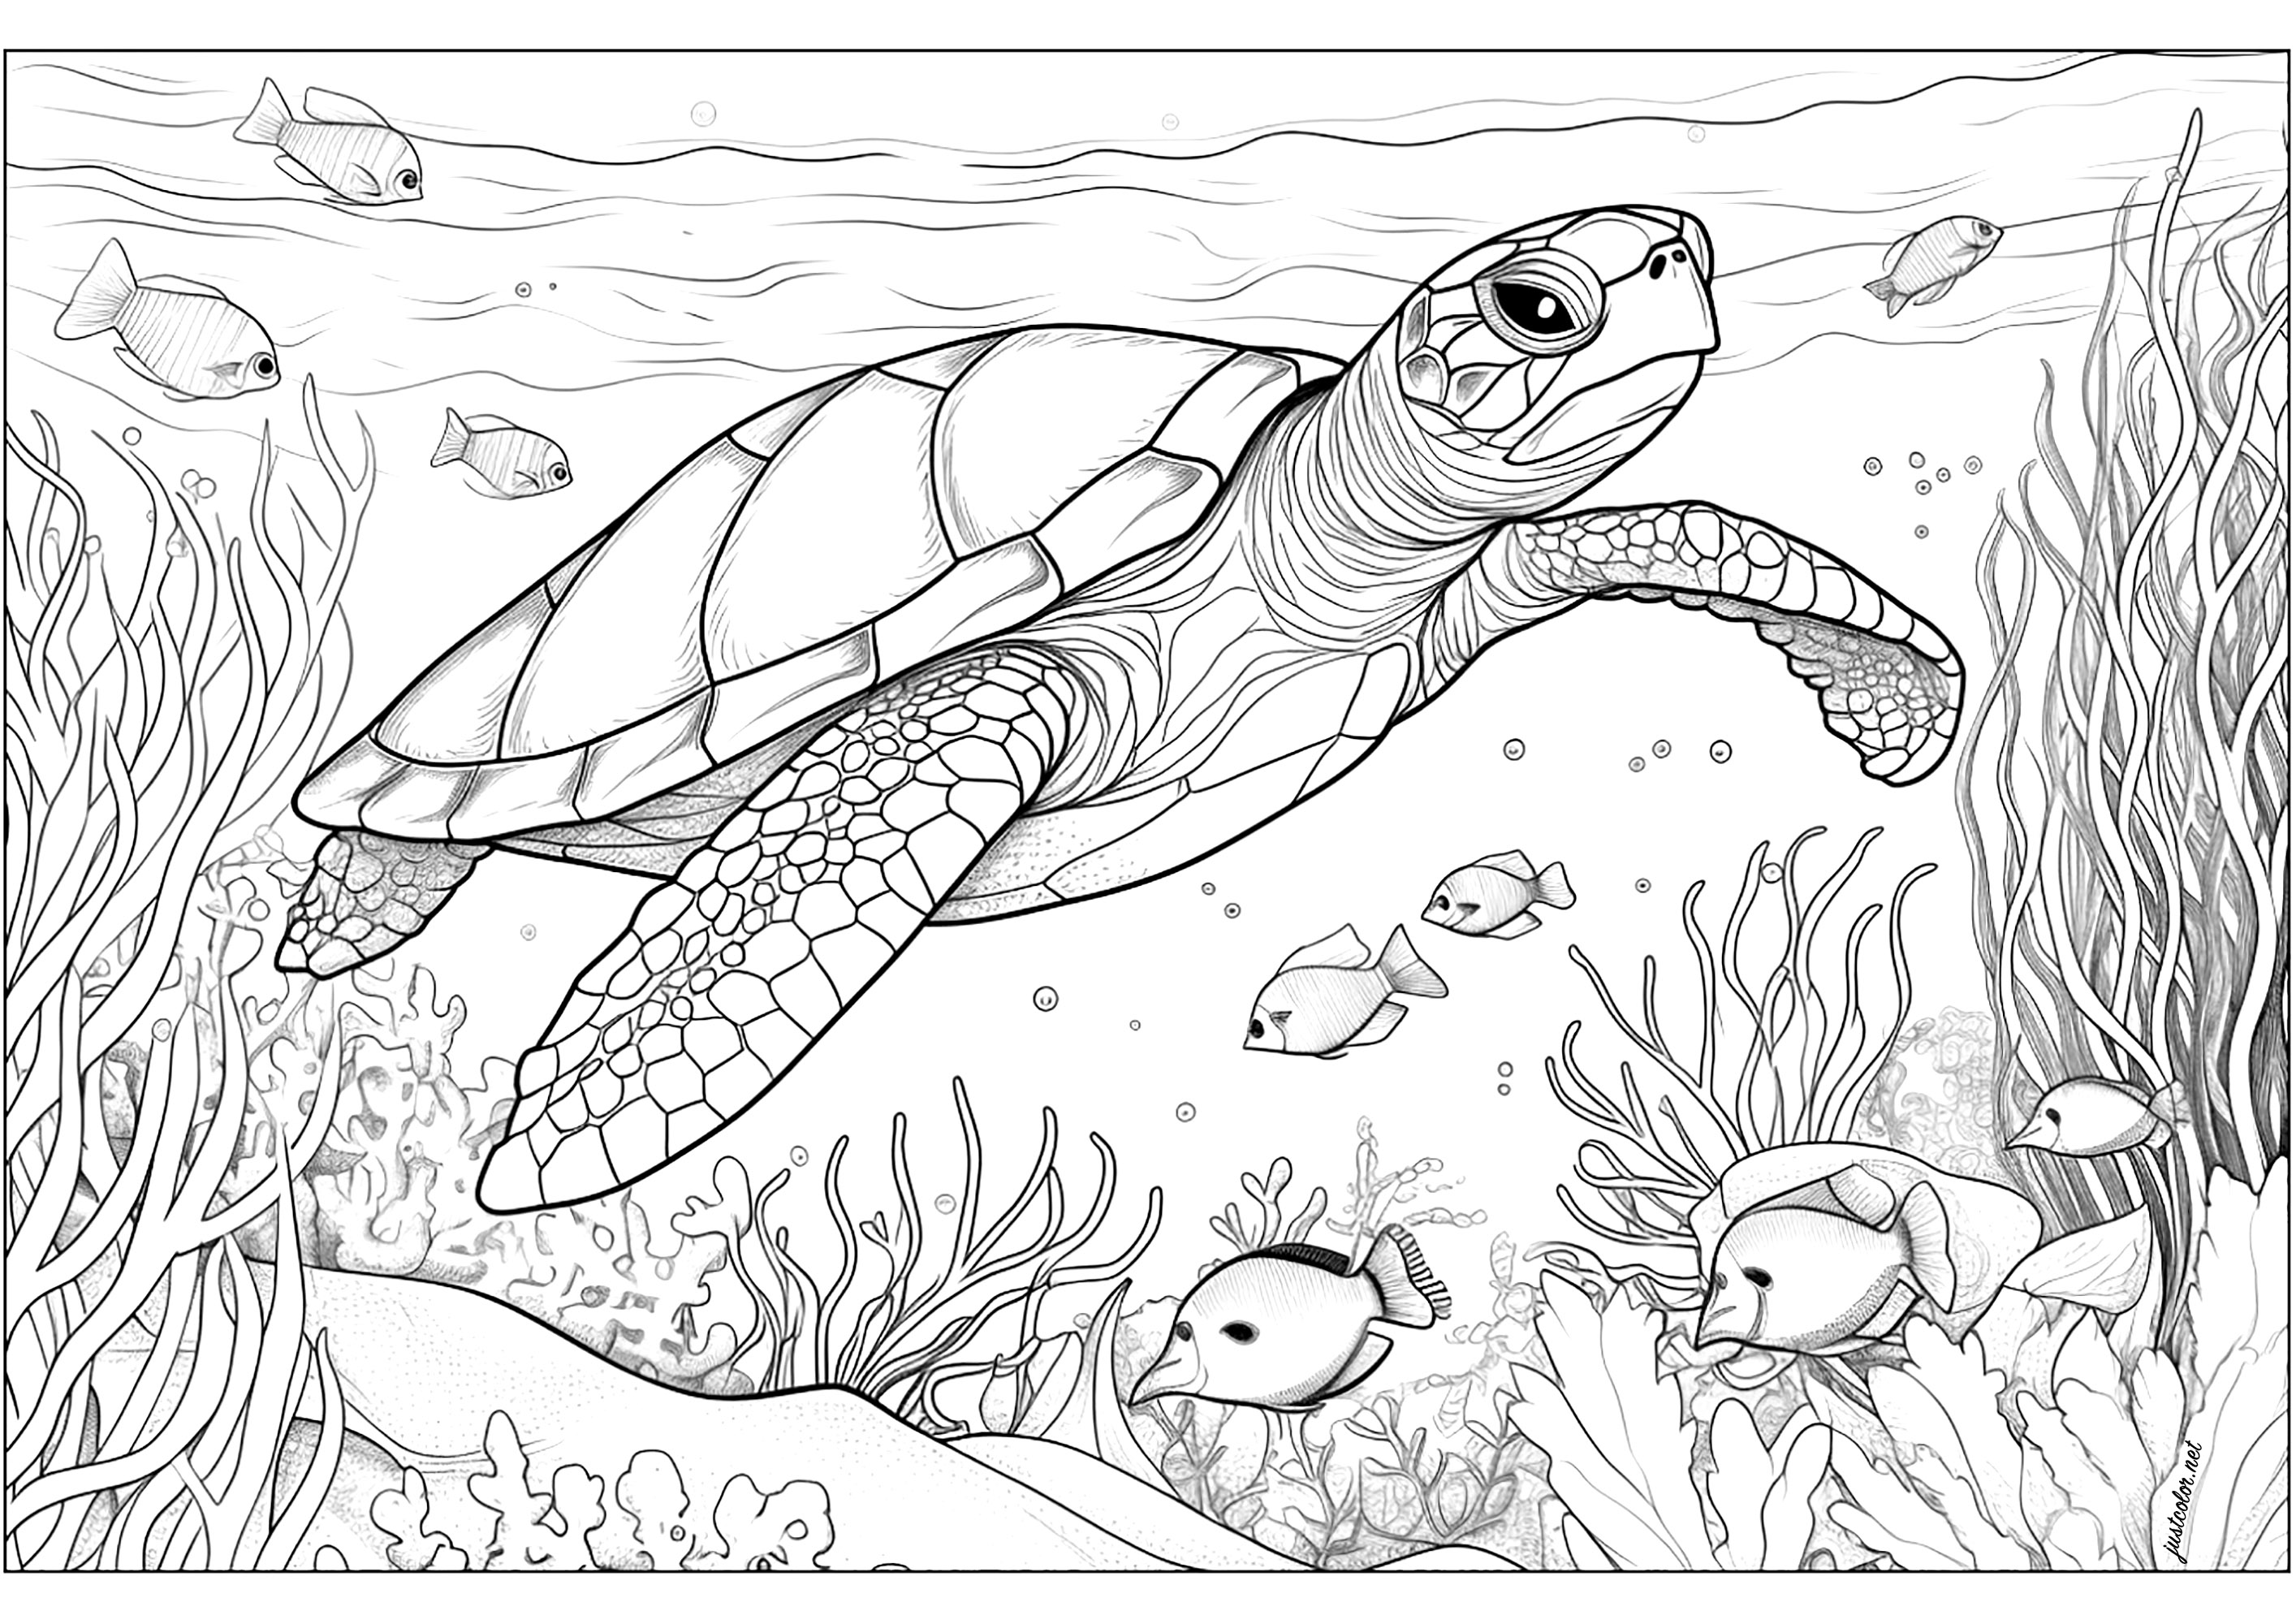 Tortue de mer avec algues et poissons. Les algues sont parsemées et s'agitent lentement tout autour de la tortue, tandis que les poissons nagent joyeusement autour d'elle.